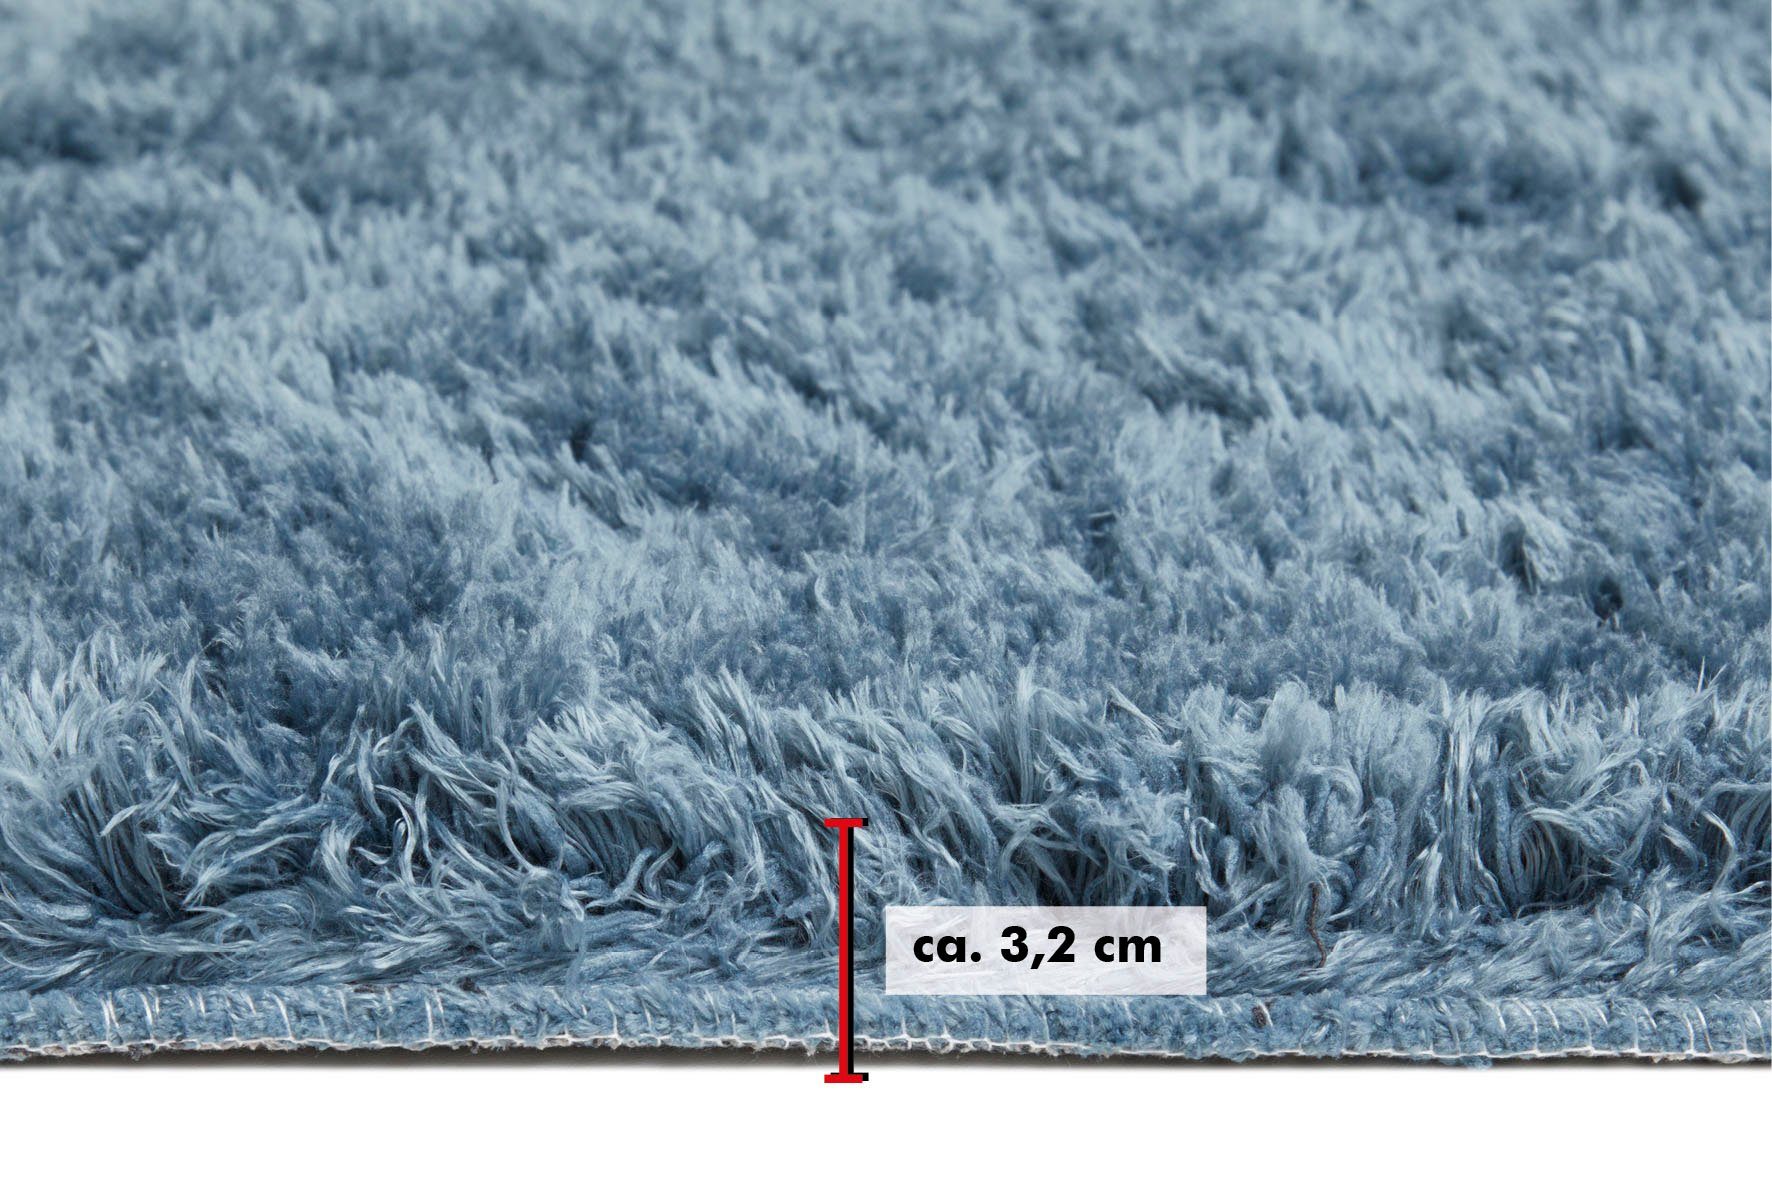 Hochflor-Teppich 32 blau Andiamo, Posada, Uni-Farben, mm, Wohnzimmer rechteckig, Höhe: